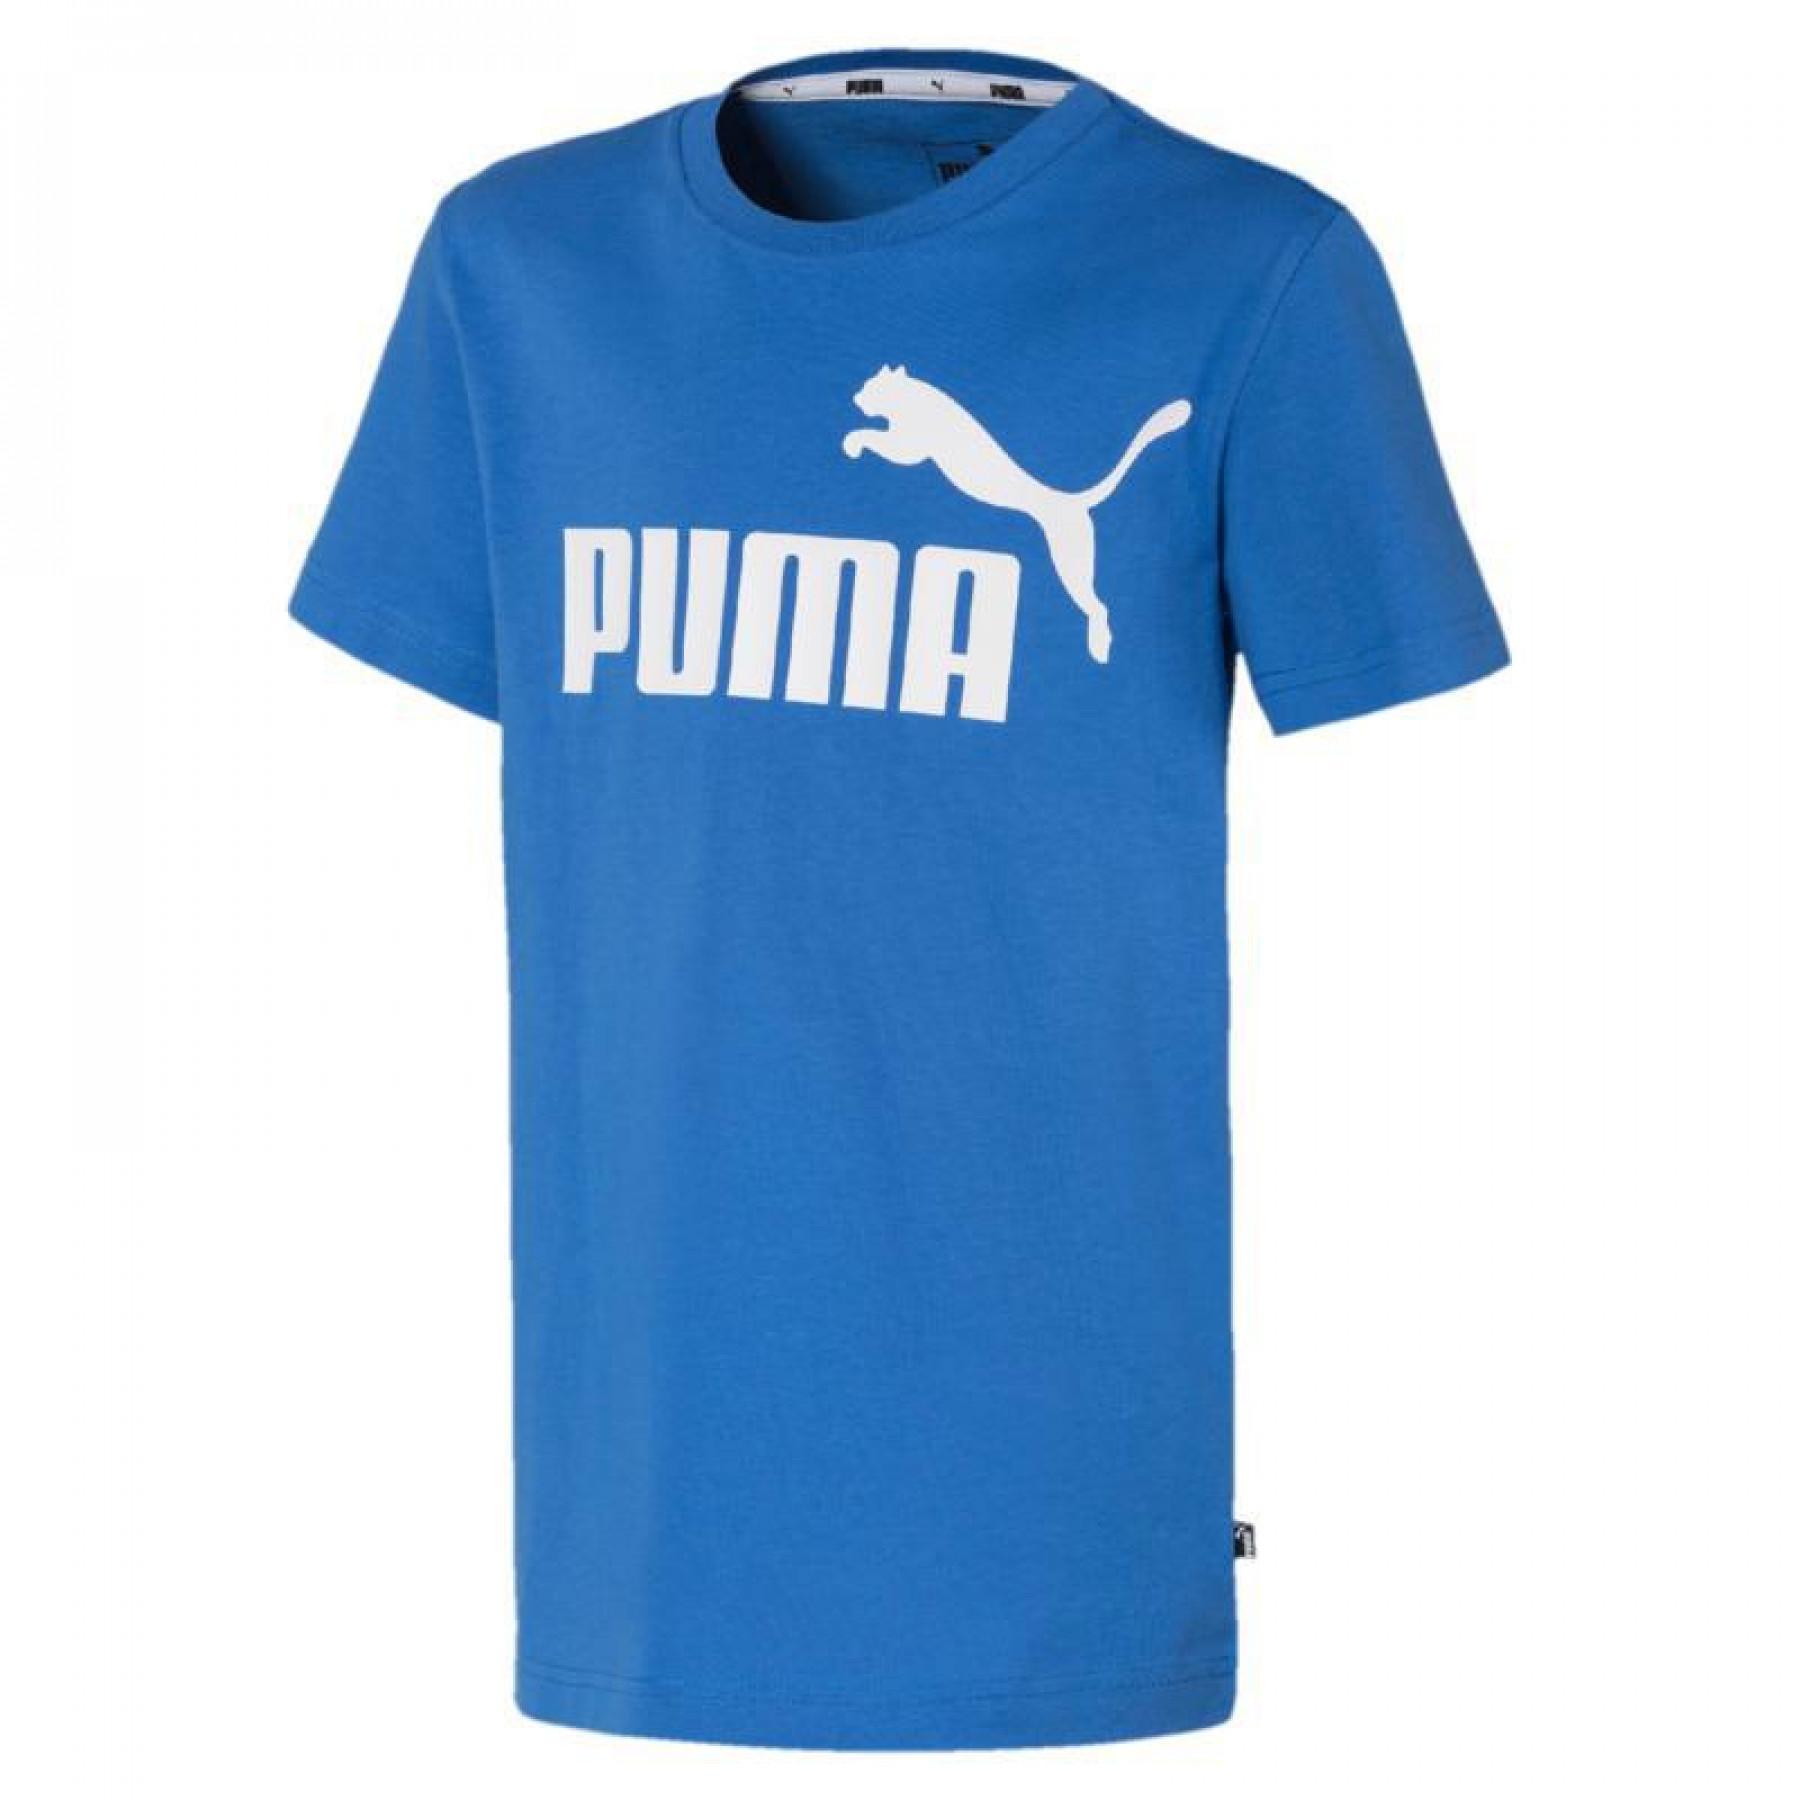 Maglietta per bambini essenziale Puma essential logo